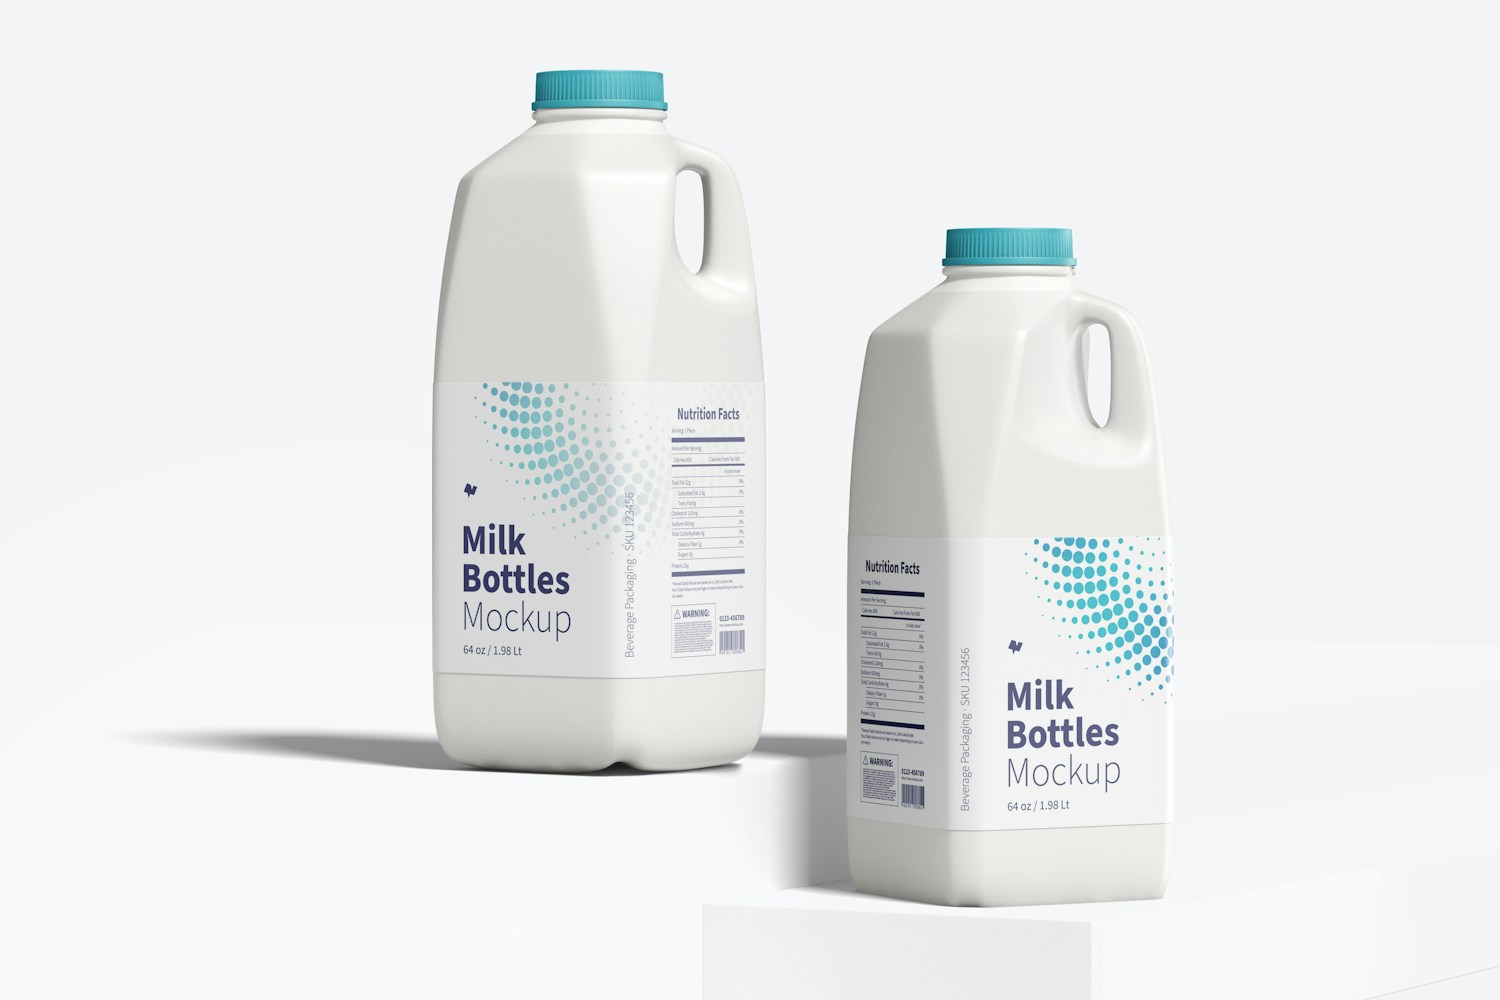 64 oz Milk Bottles Mockup, Front View